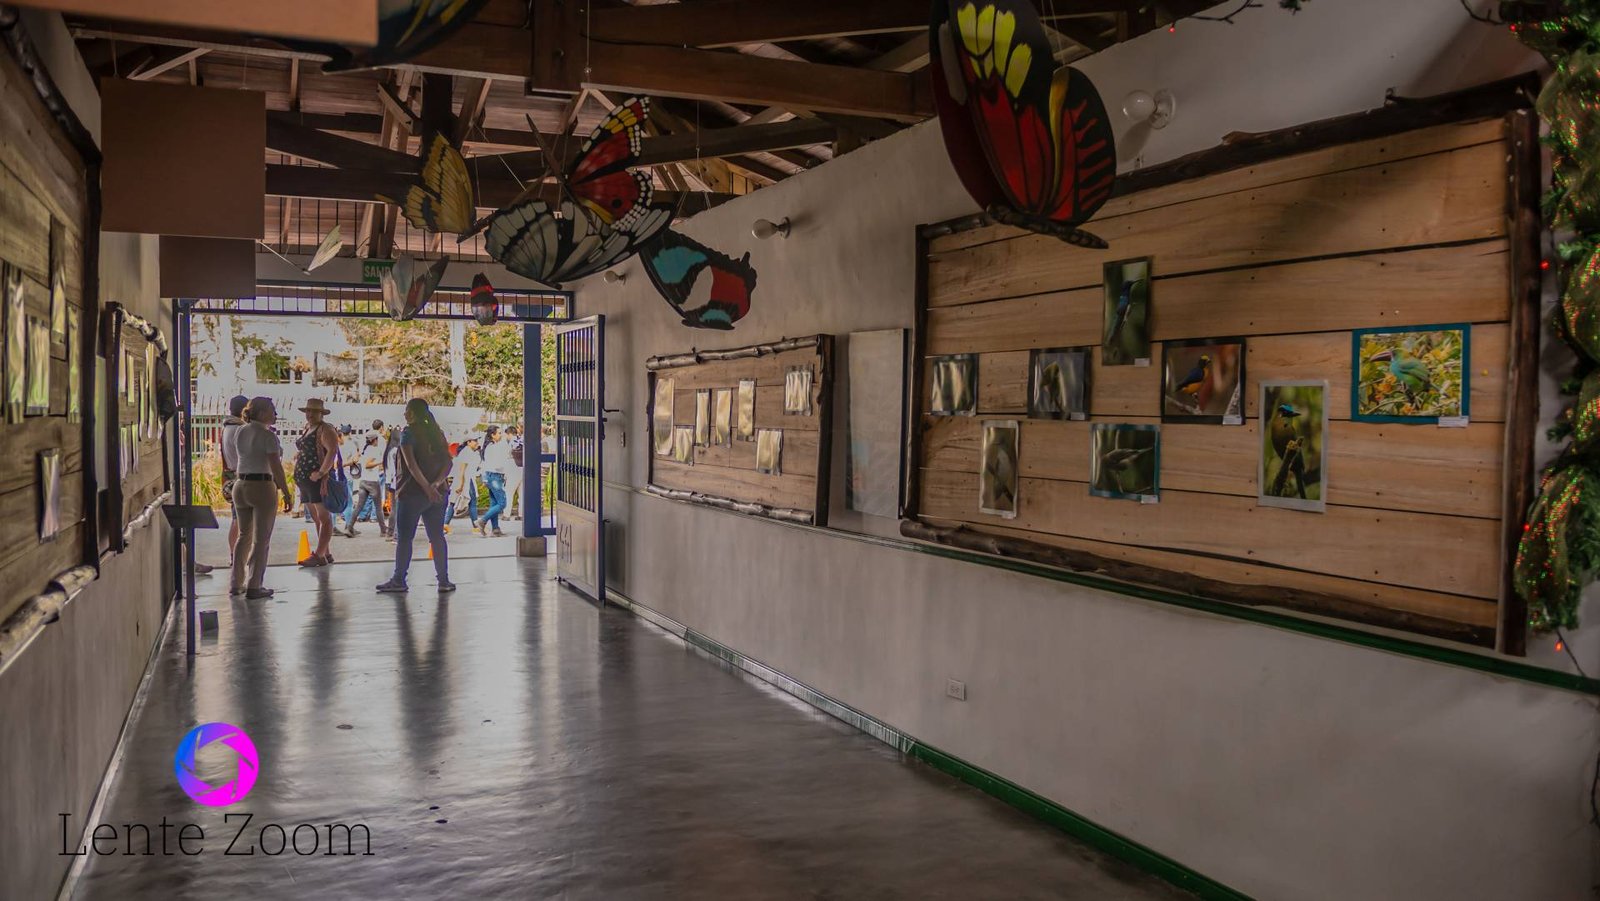 Entrada de un lugar donde su pasillo está decorado con mariposas he historias en unas pequeñas exposiciones, dentro de las Fotos de Calarcá, Quindío